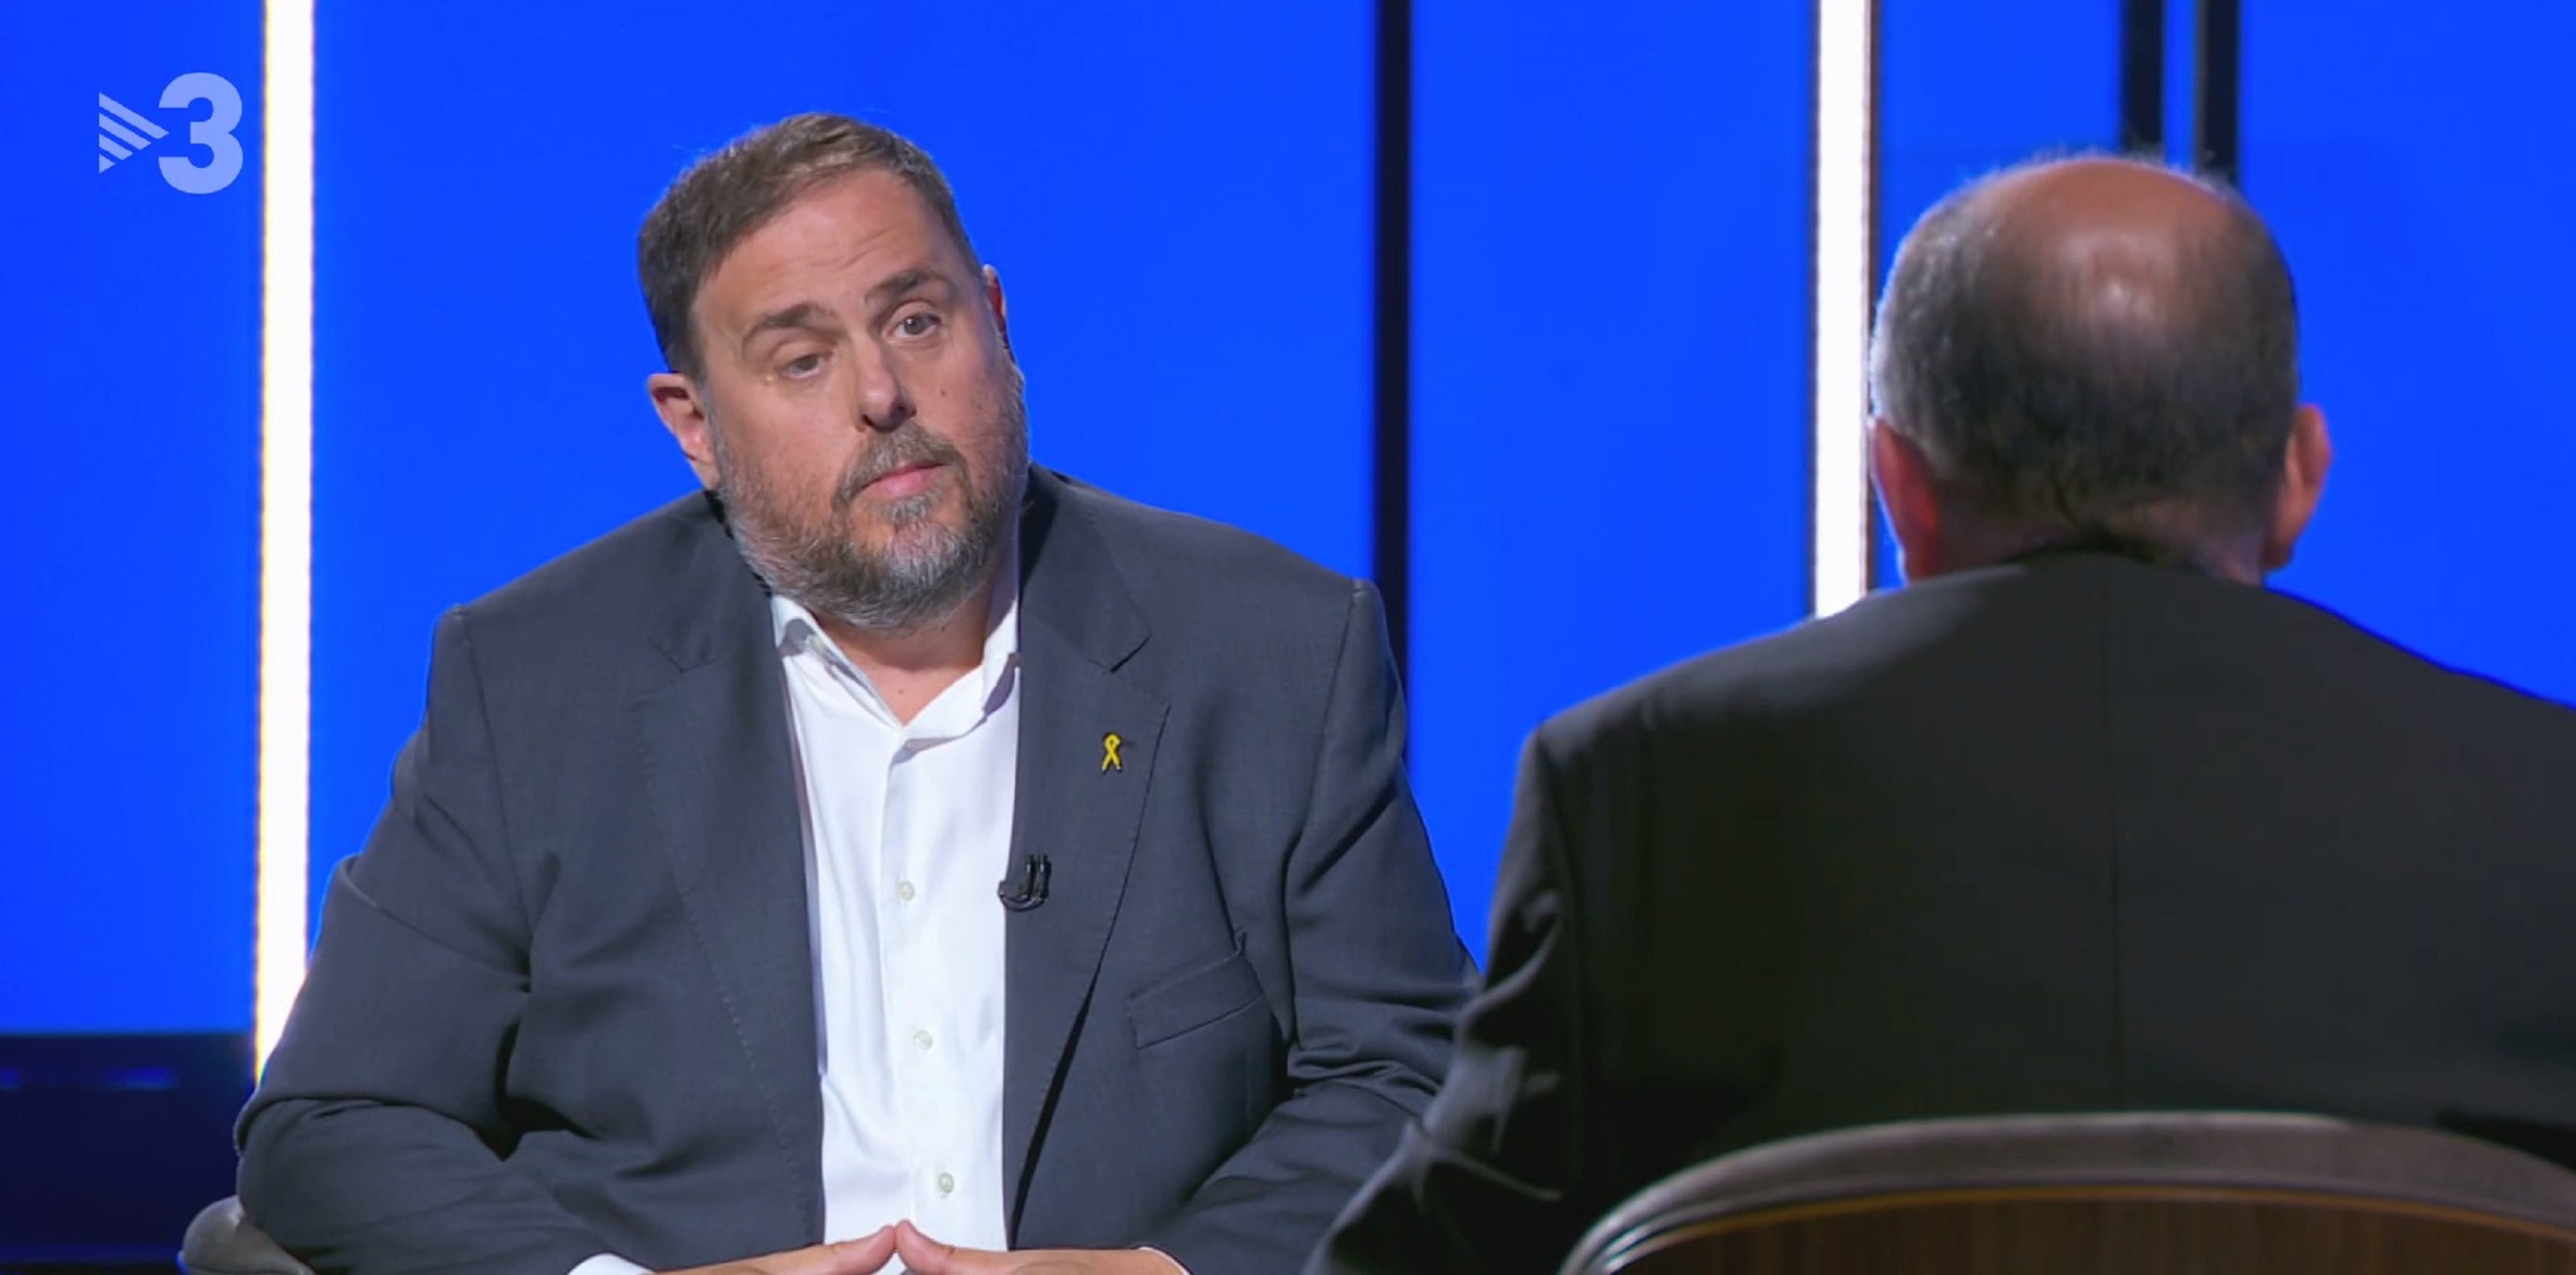 La entrevista de Sanchis a Oriol Junqueras en TV3 hace una audiencia descomunal